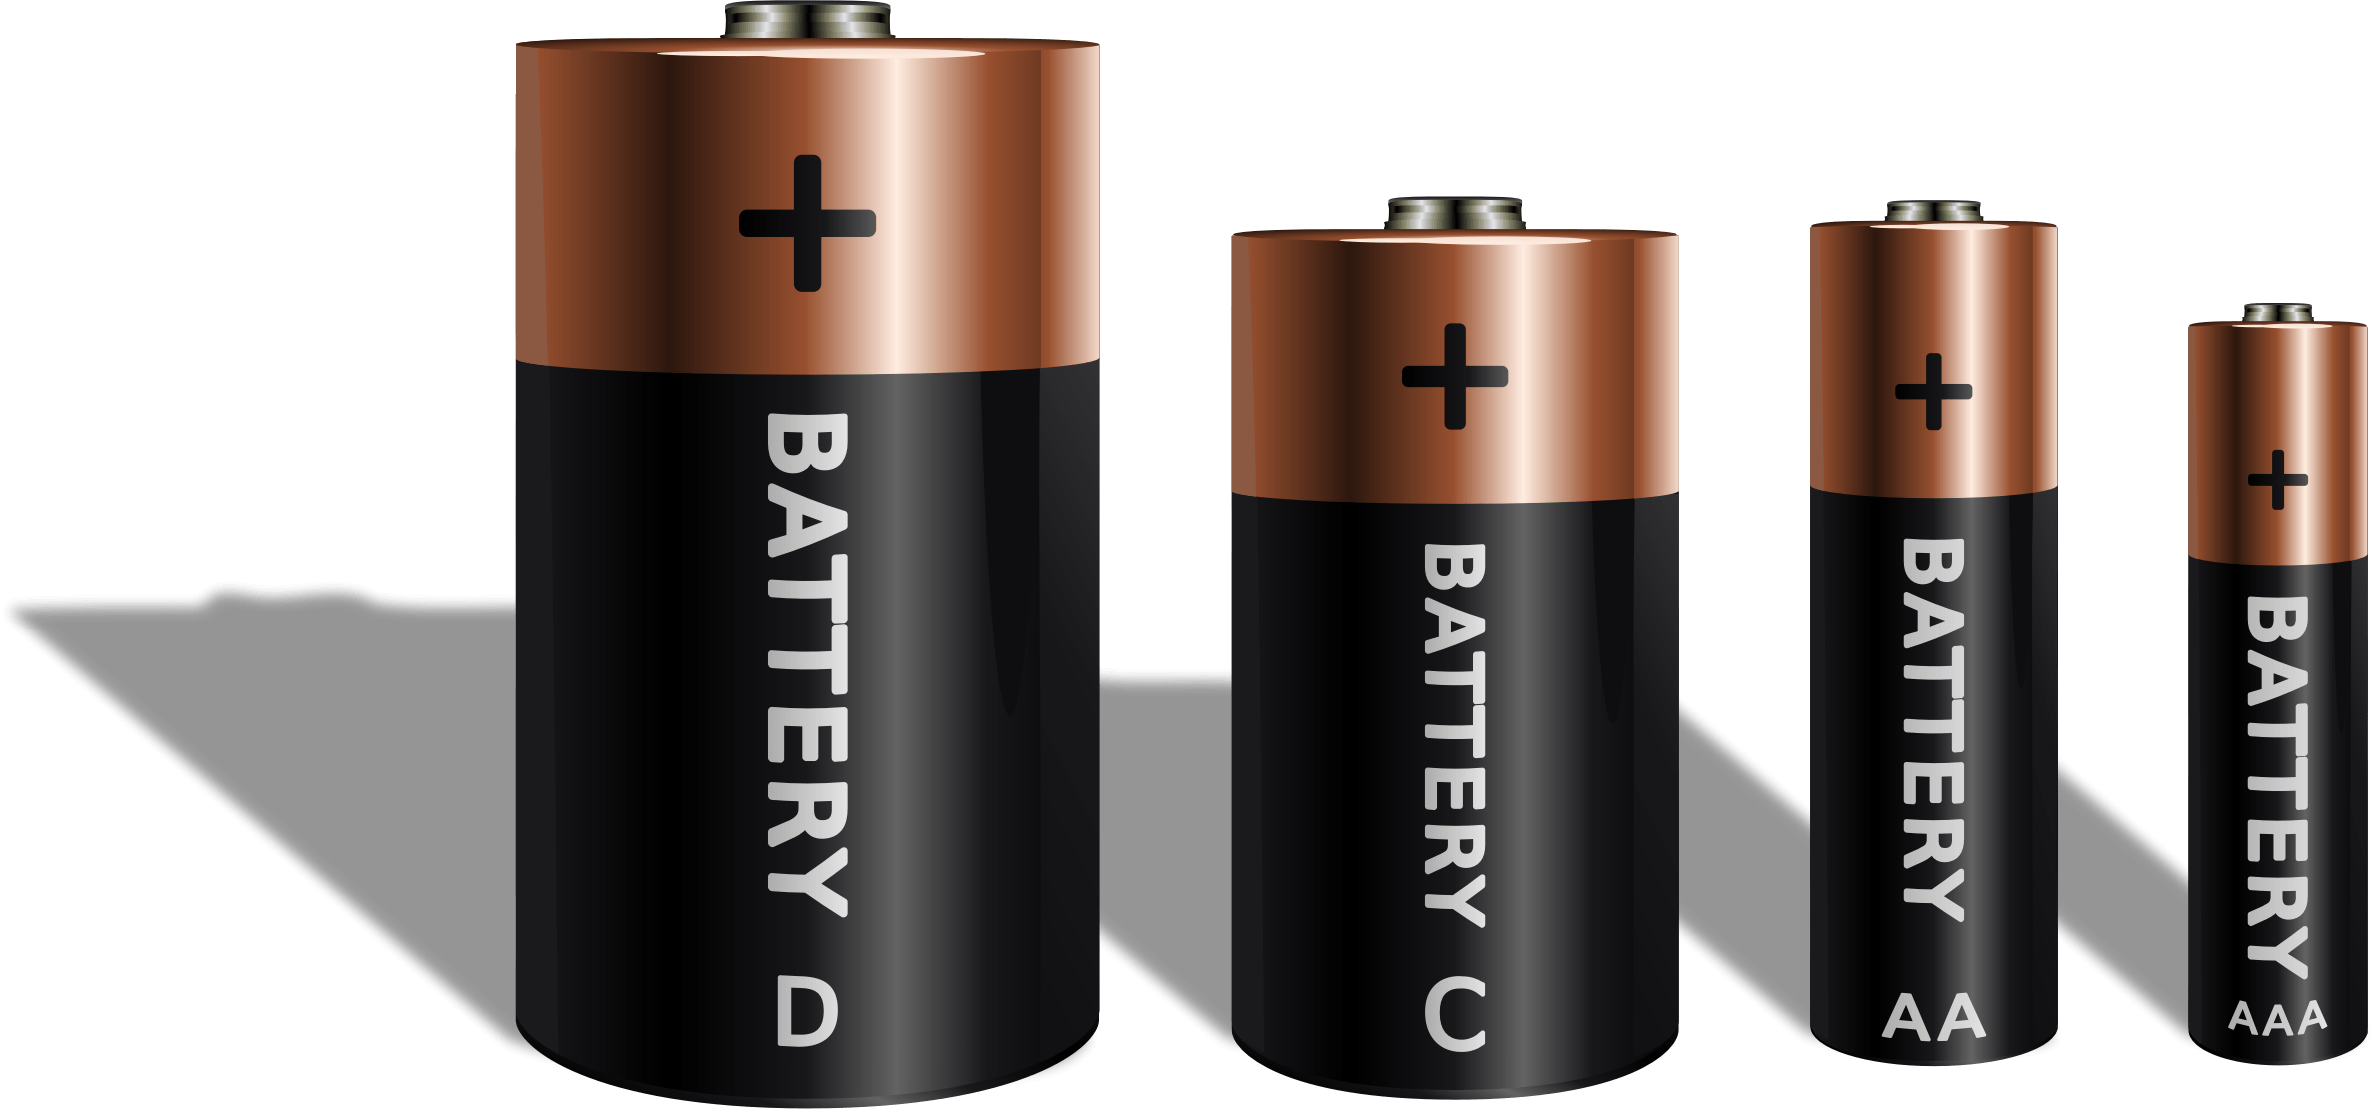 Батарейка. Изображение батарейки. Электрические батарейки. Современные батарейки.